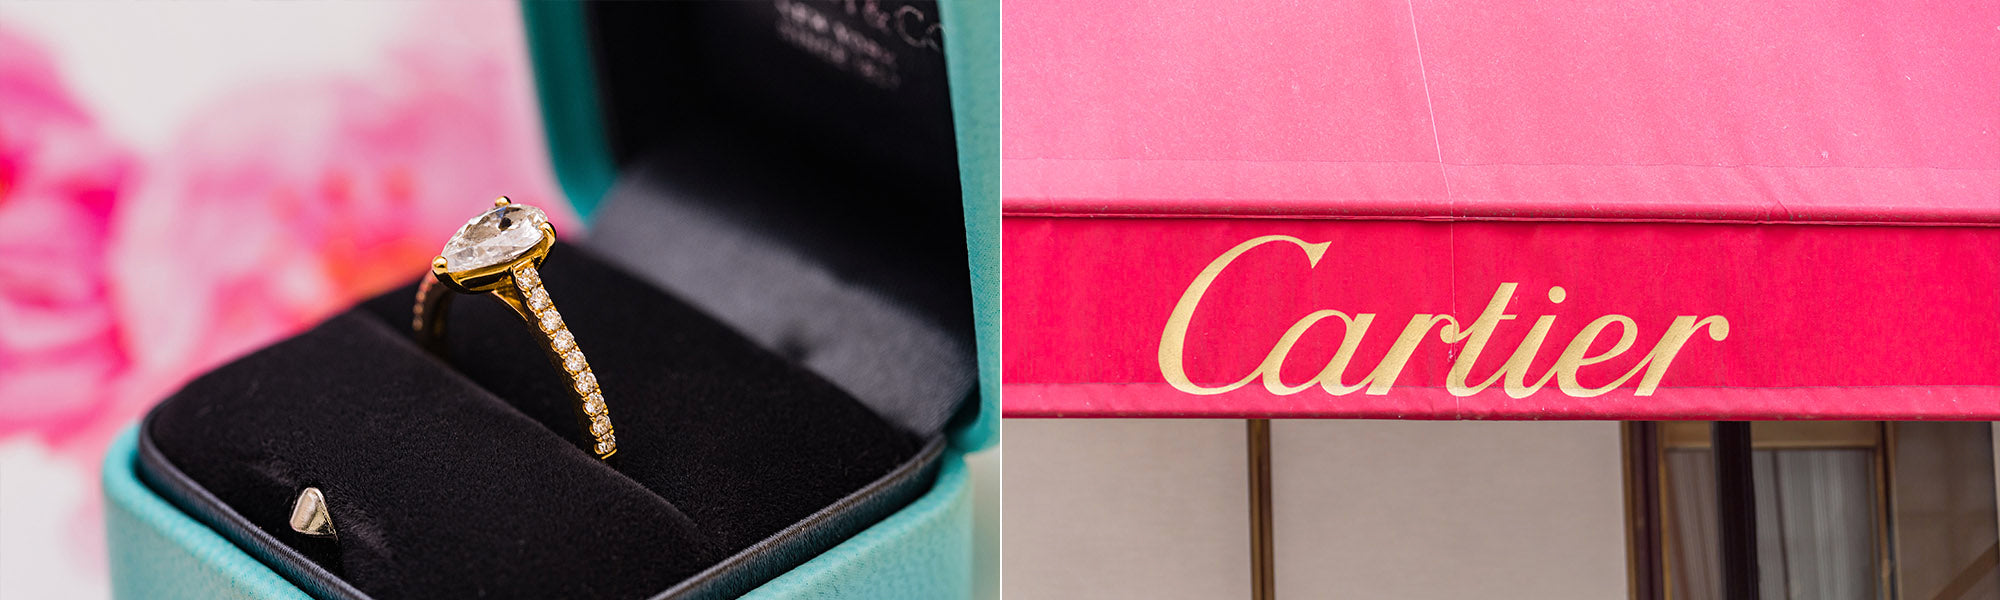 Tiffany versus Cartier Jewellery